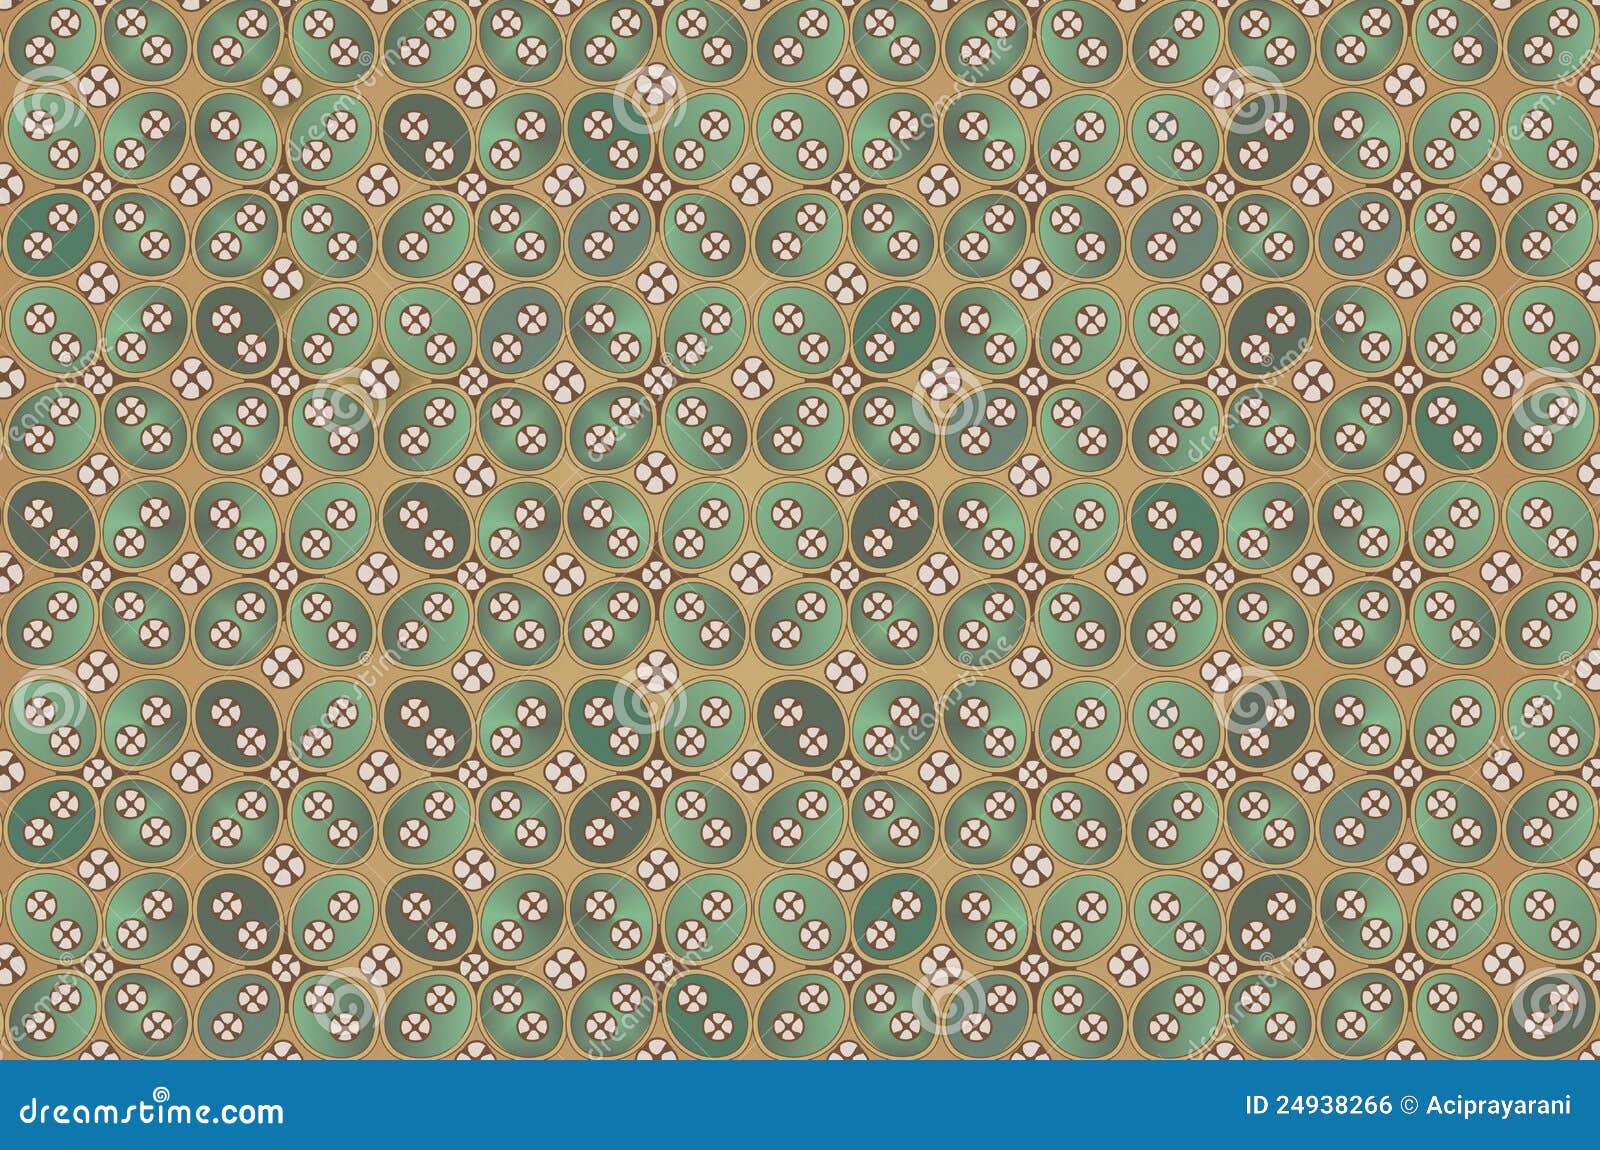 kawung batik pattern - cotton